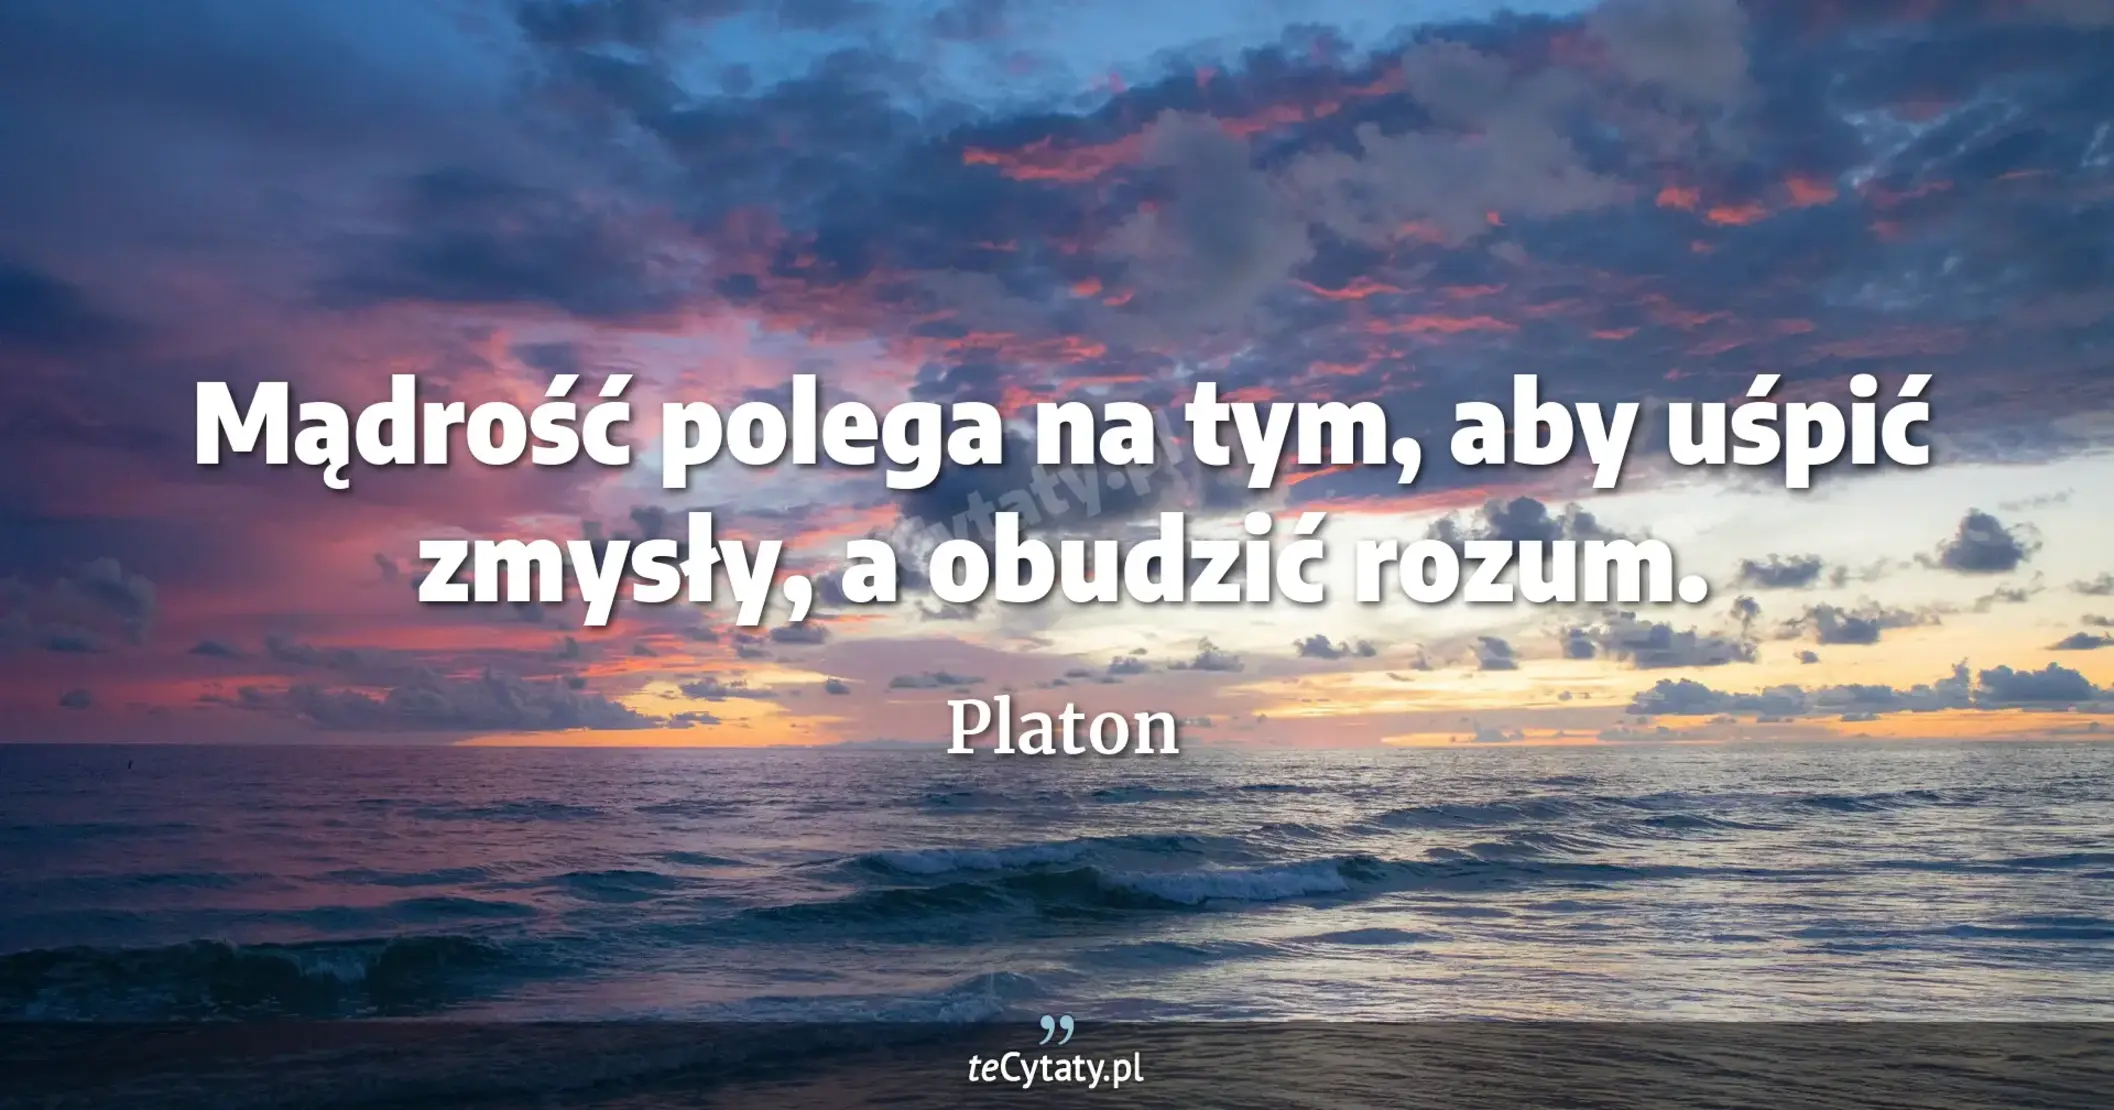 Mądrość polega na tym, aby uśpić zmysły, a obudzić rozum. - Platon